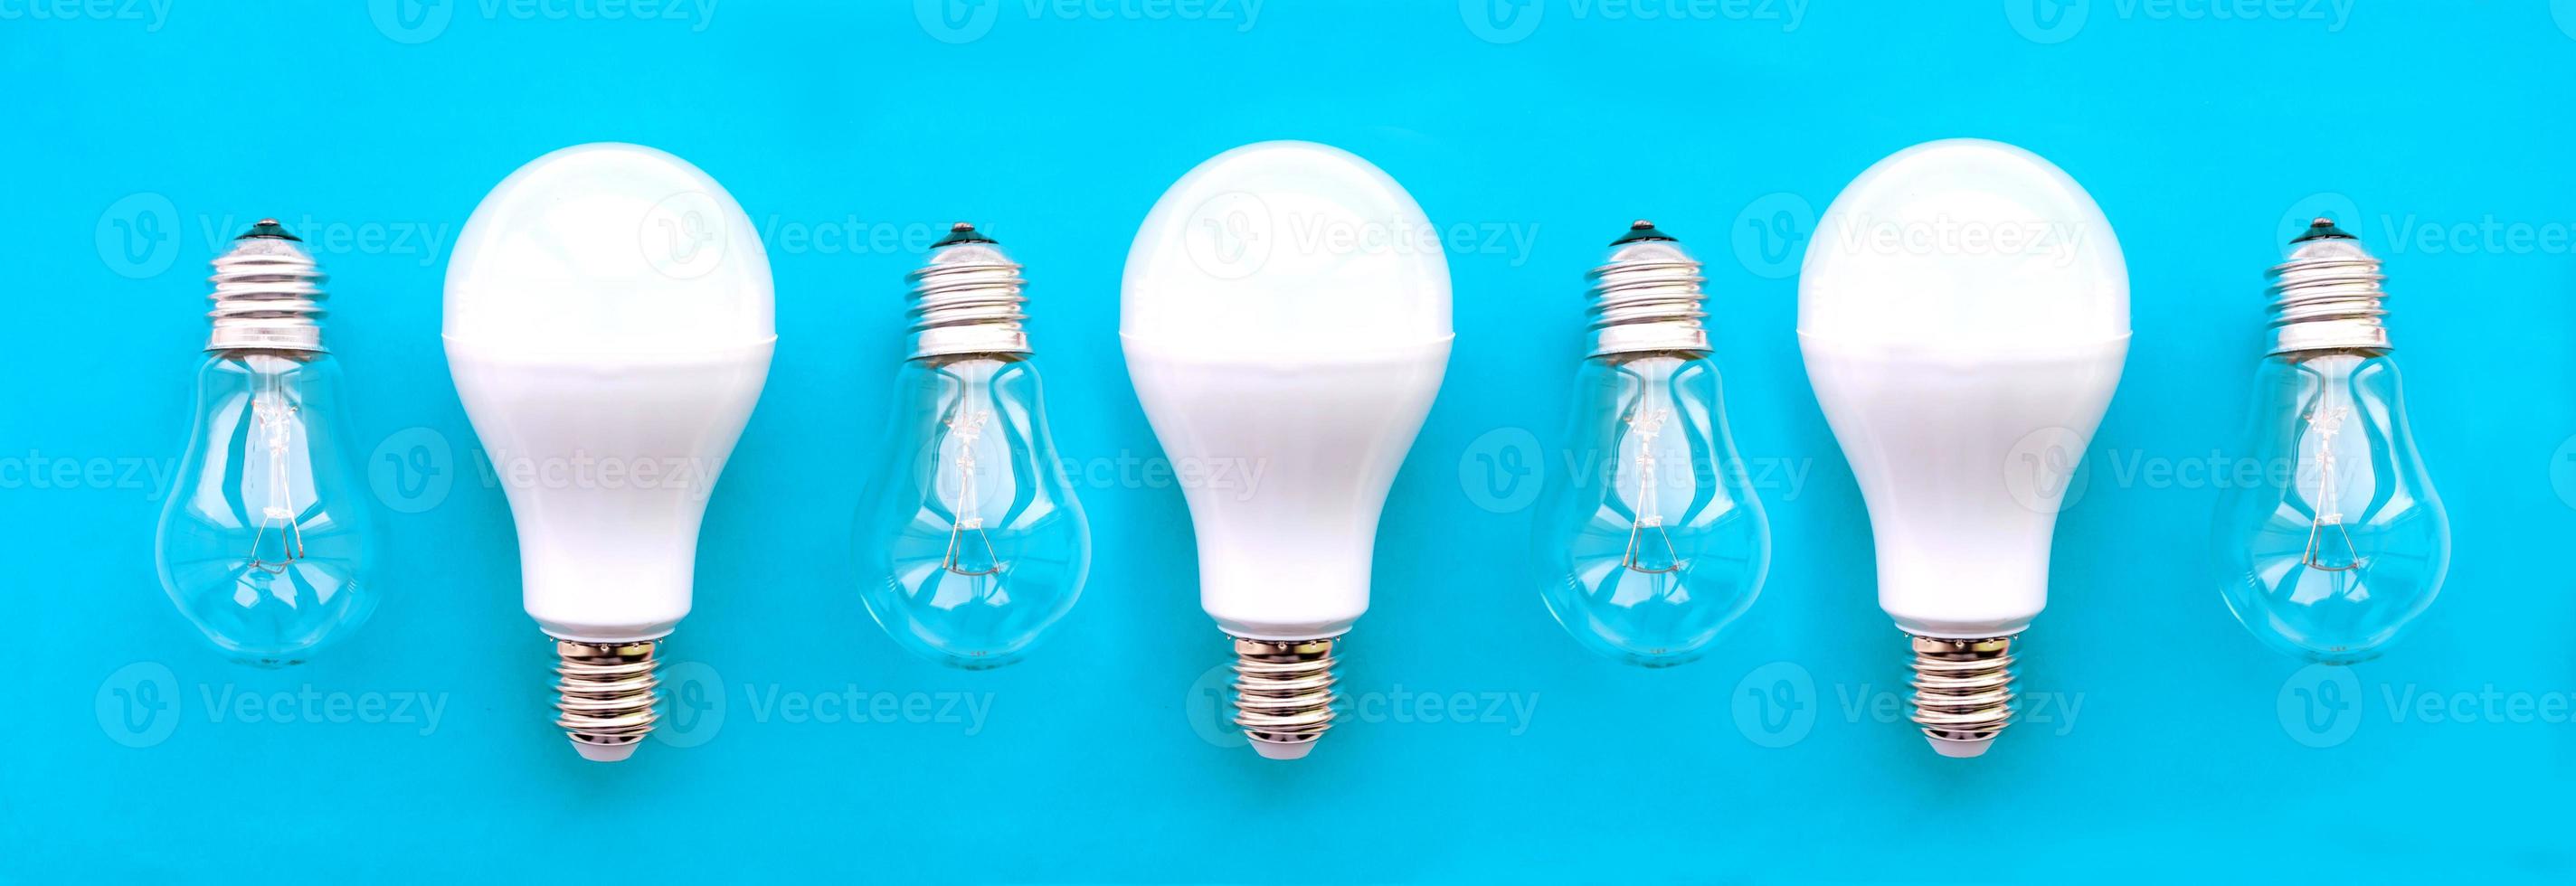 energisnåla lampor med glödlampor i rad på blå bakgrund. konceptet att spara energi. foto